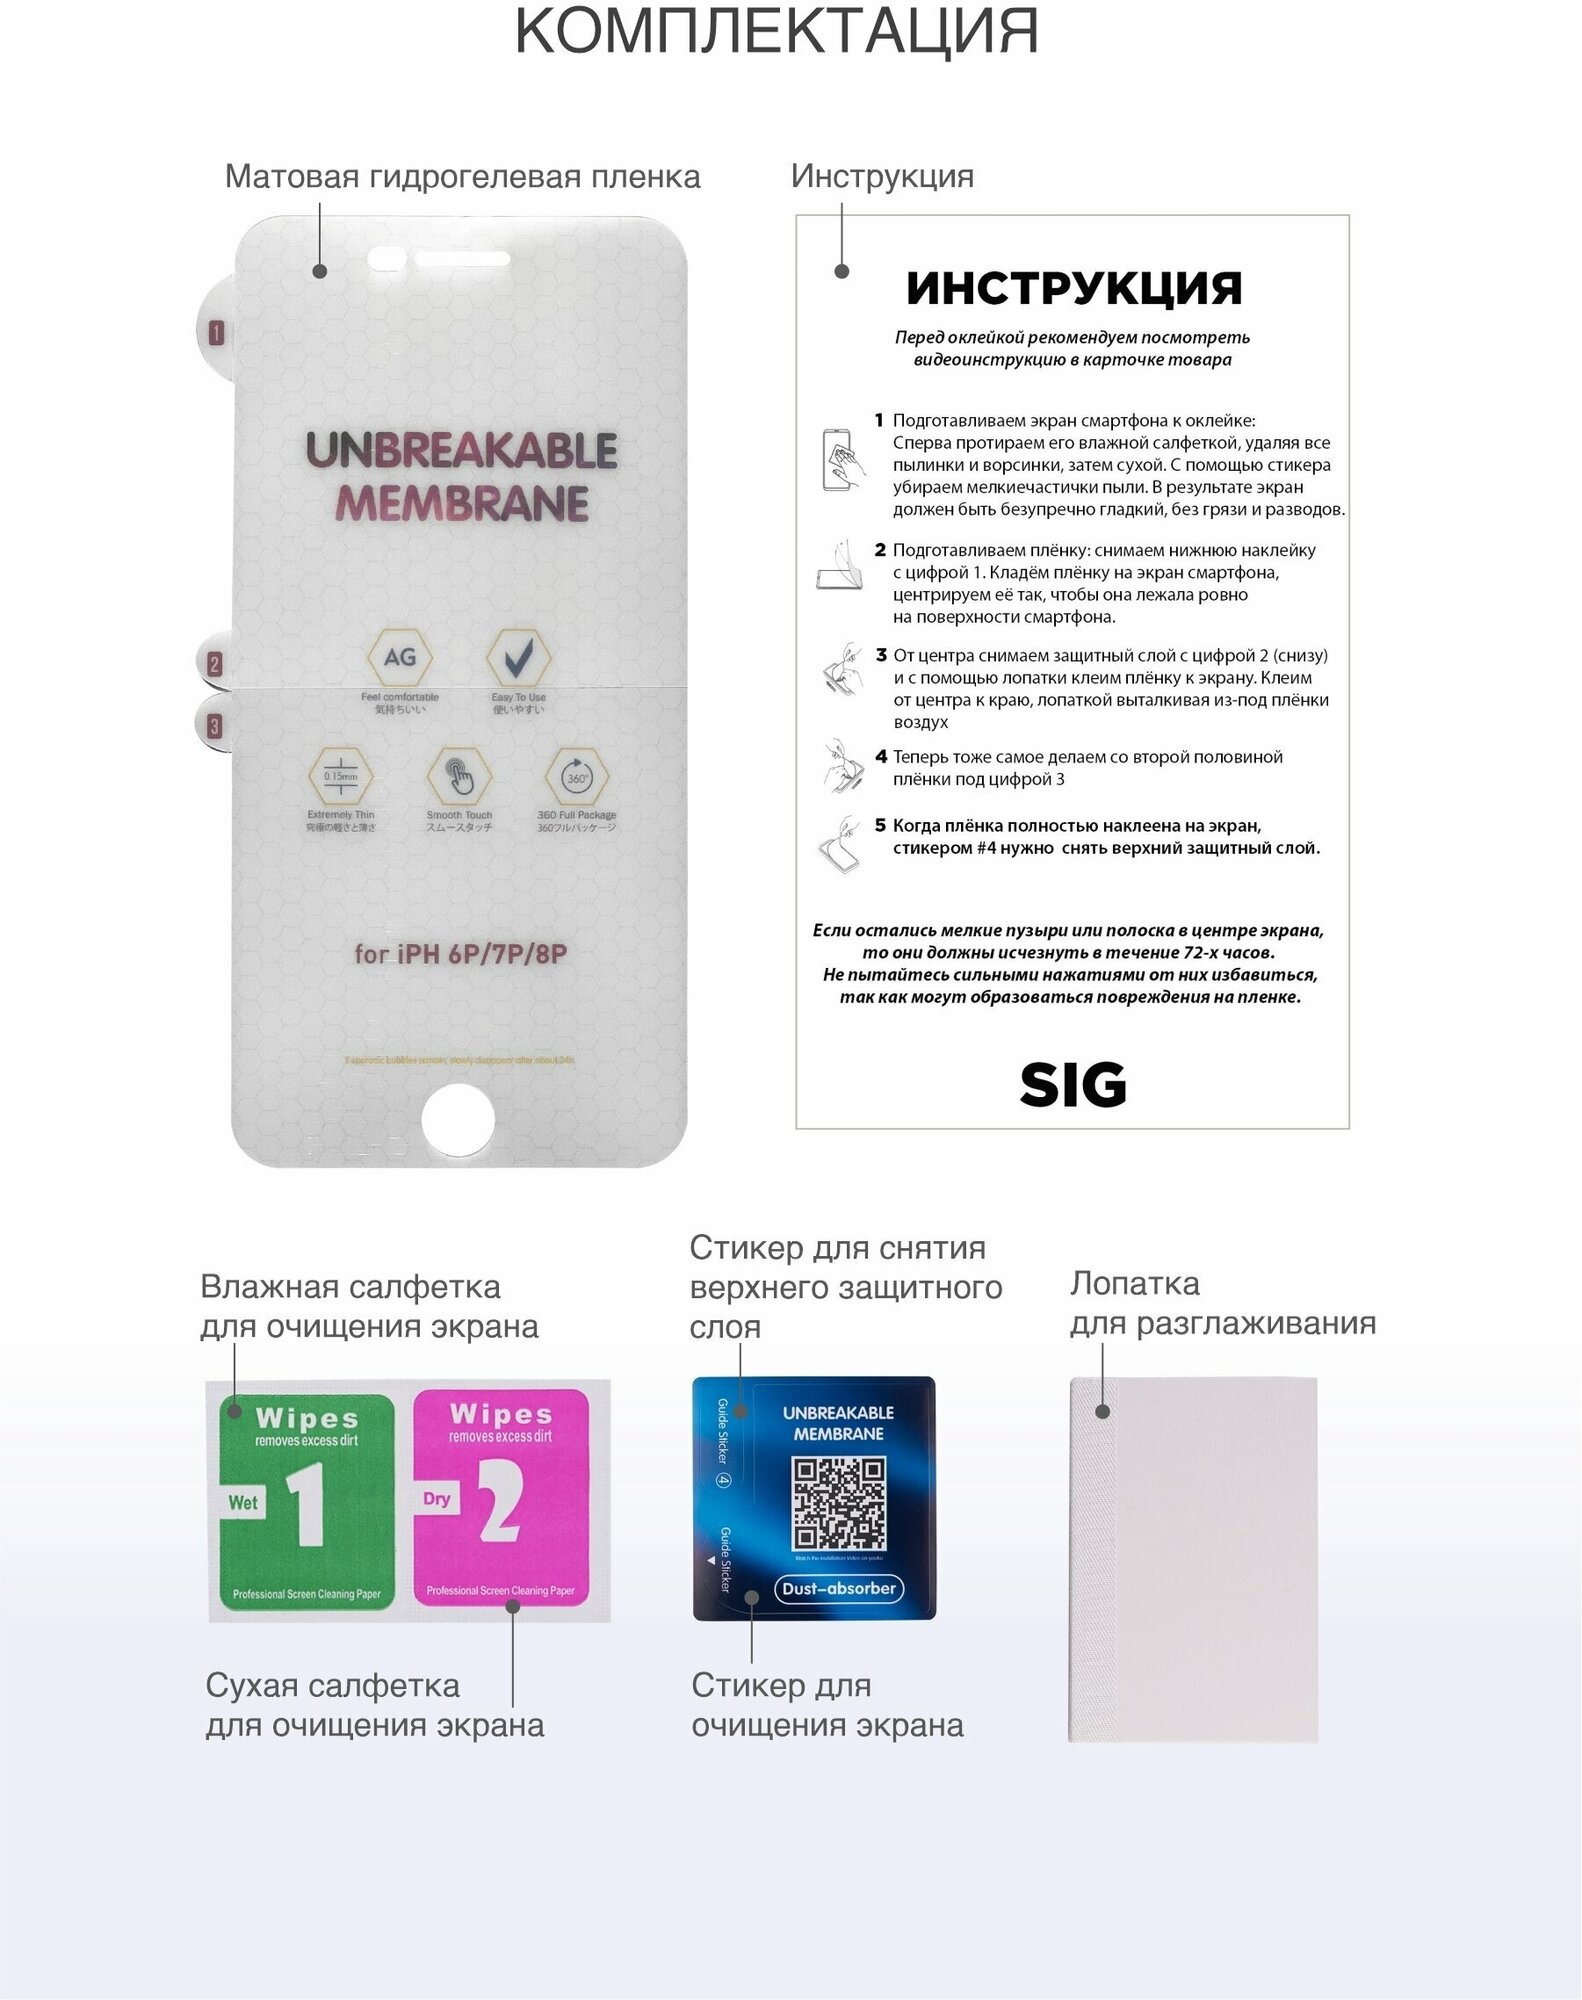 Матовая гидрогелевая защитная пленка для iPhone 6 Plus и iPhone 7 Plus и iPhone 8 Plus